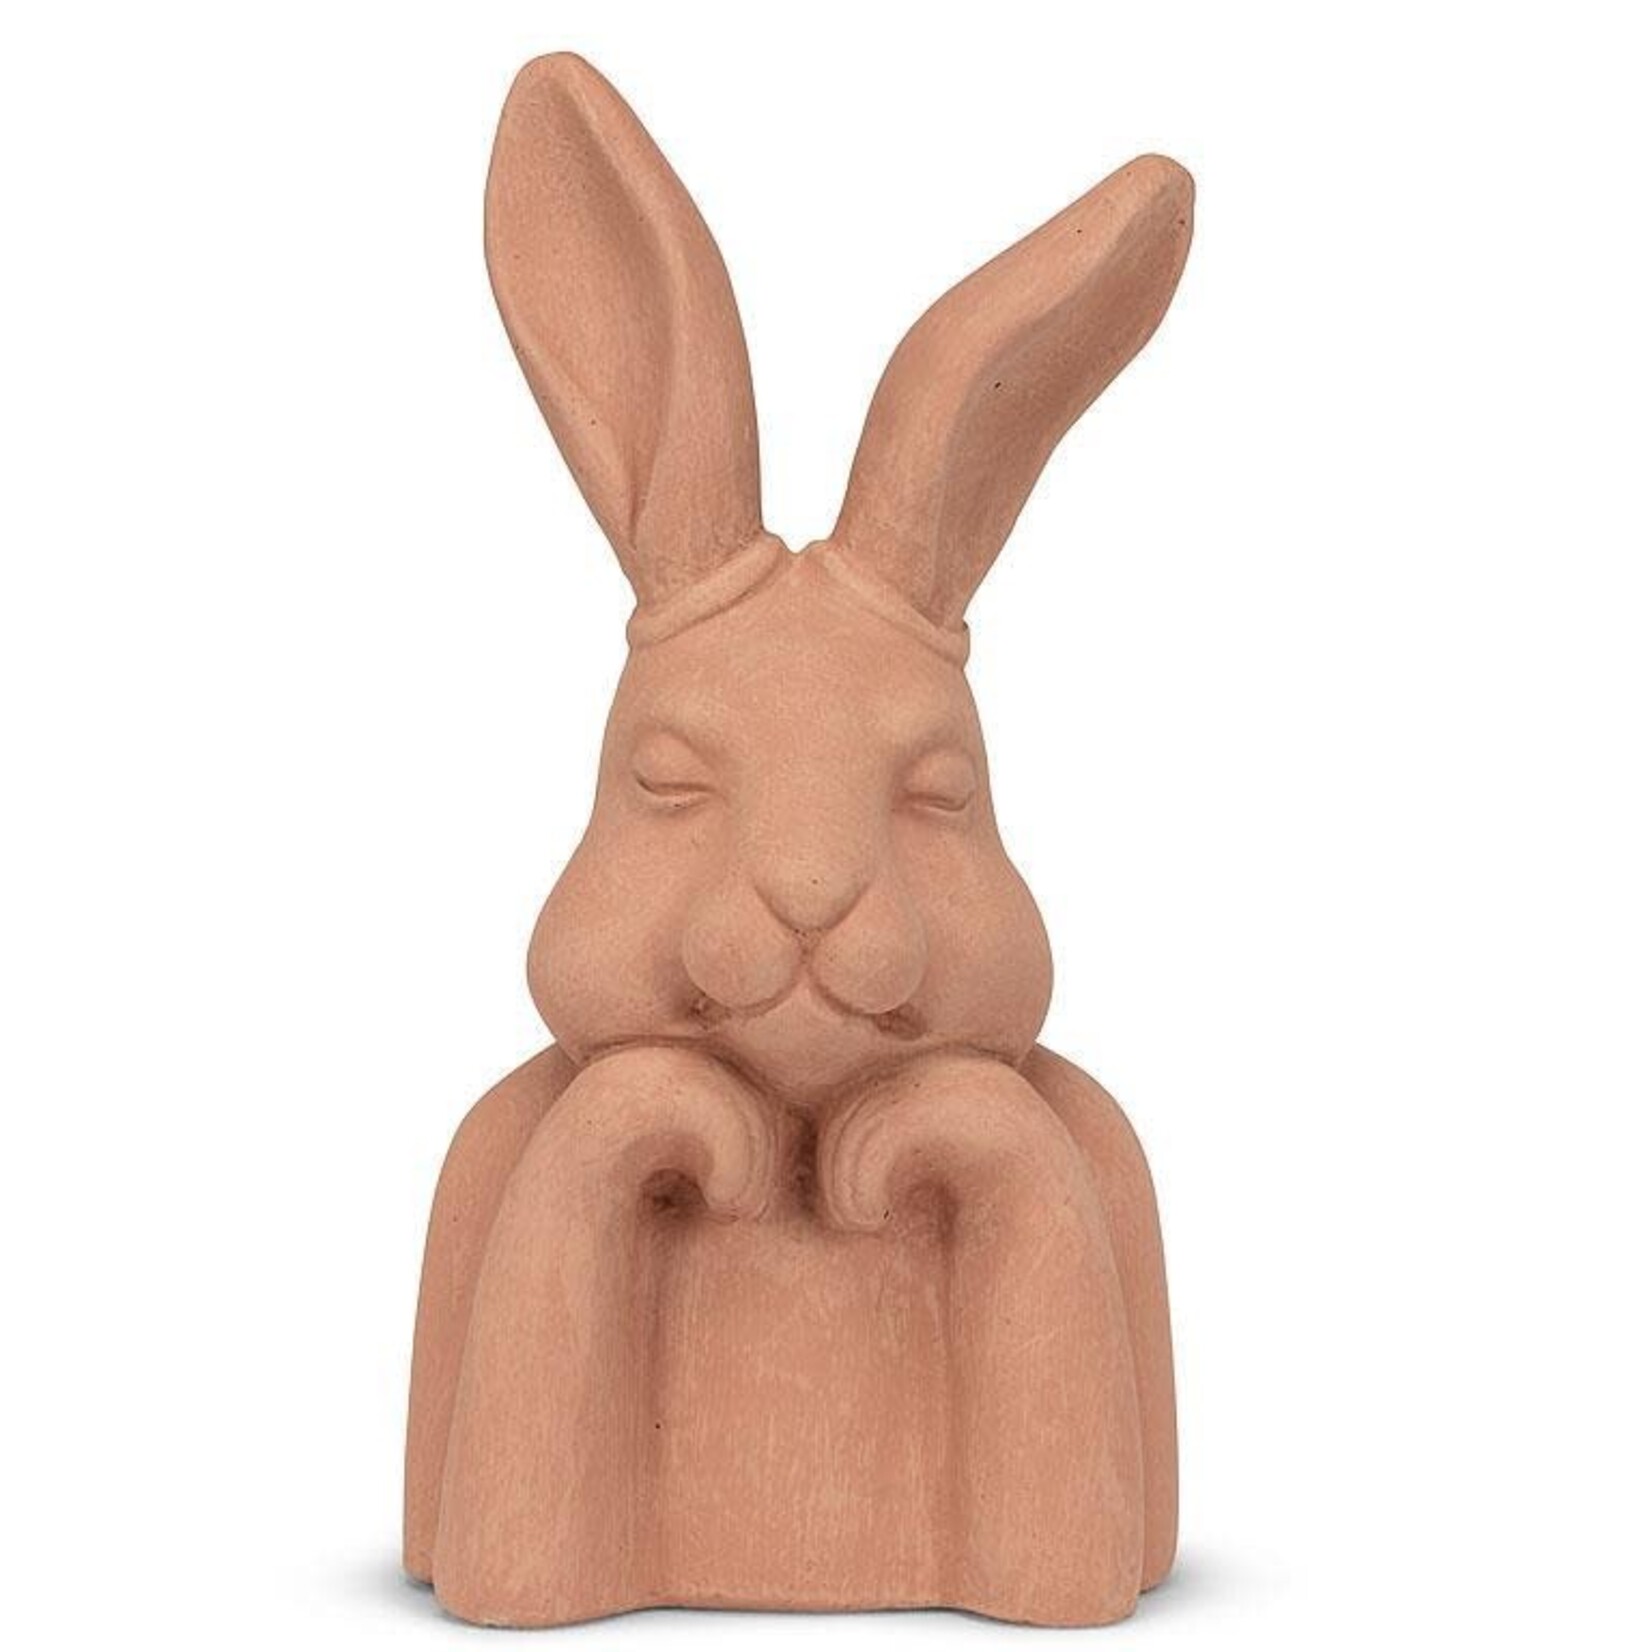 Abbott Pondering Terracotta Rabbit - 10.5"